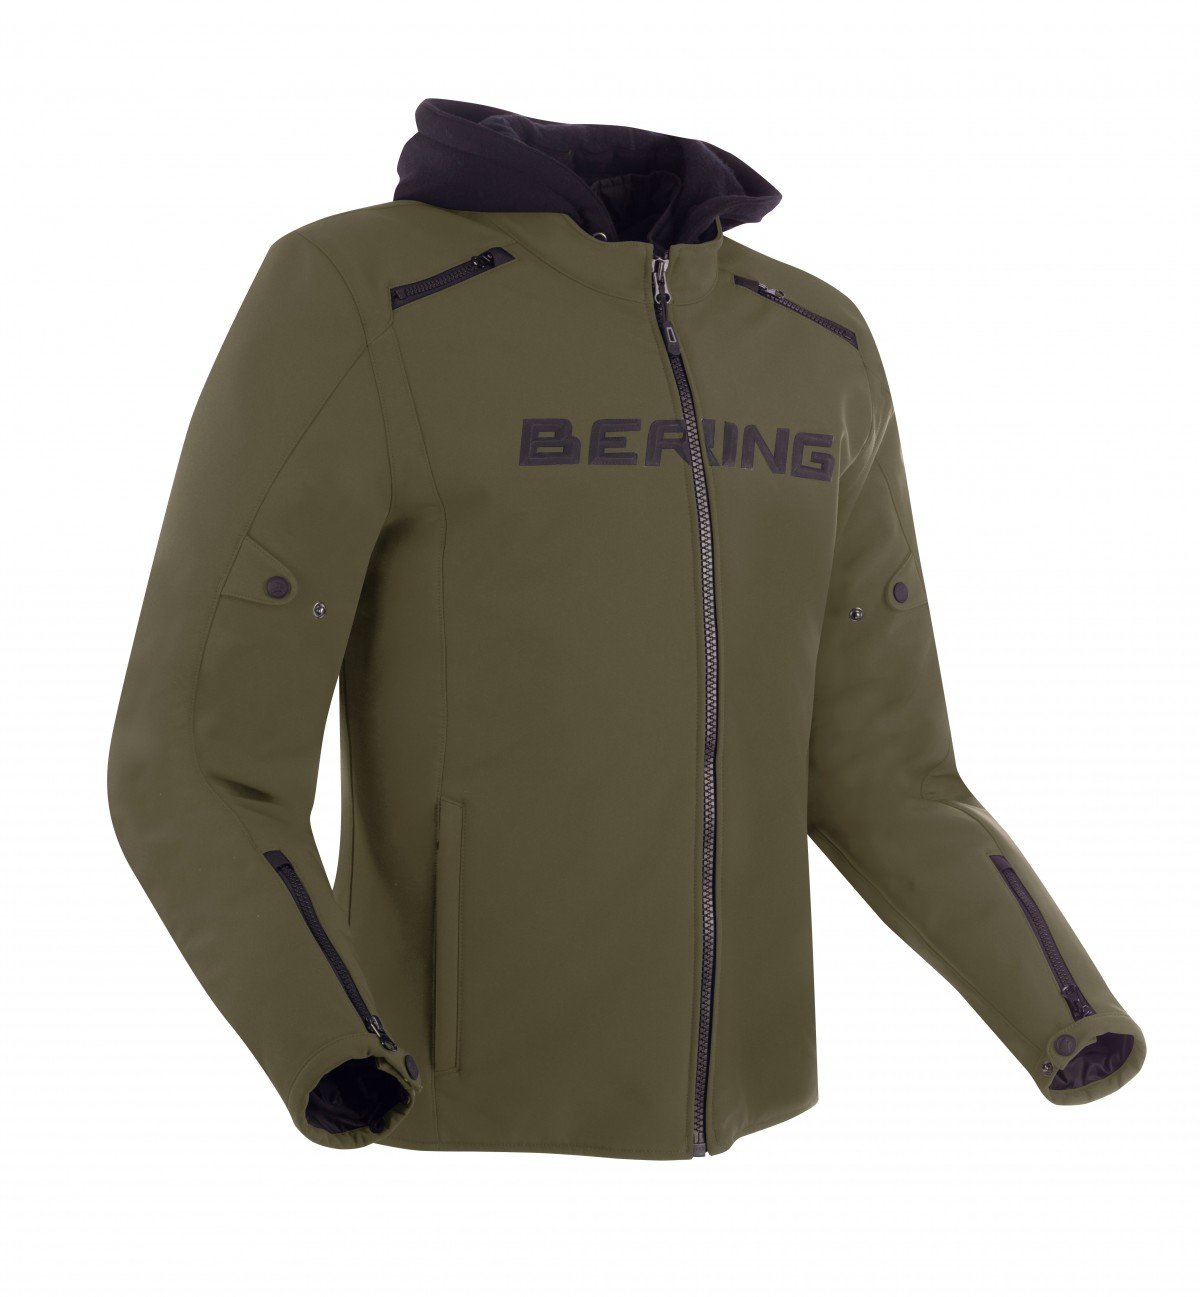 Image of Bering Elite Jacket Khaki Size 3XL ID 3660815170359